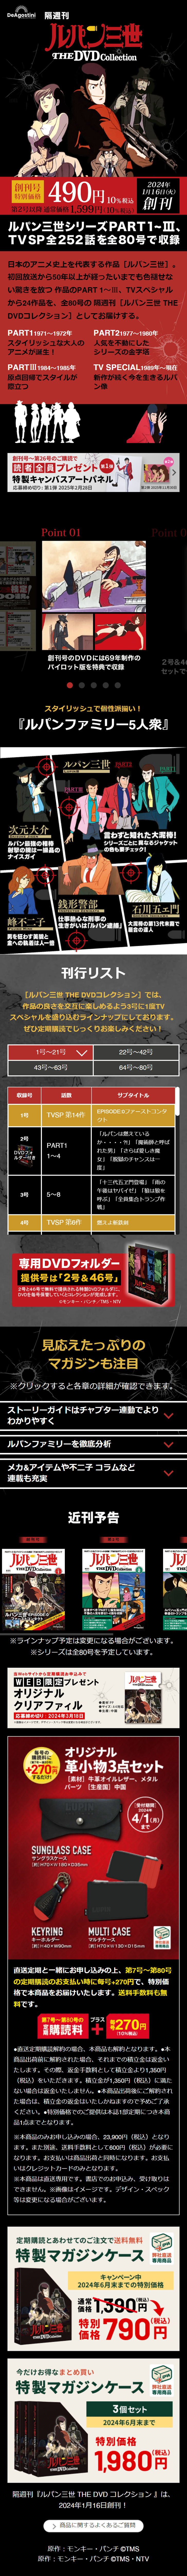 隔週刊 ルパン三世 THE DVDコレクション_sp_1